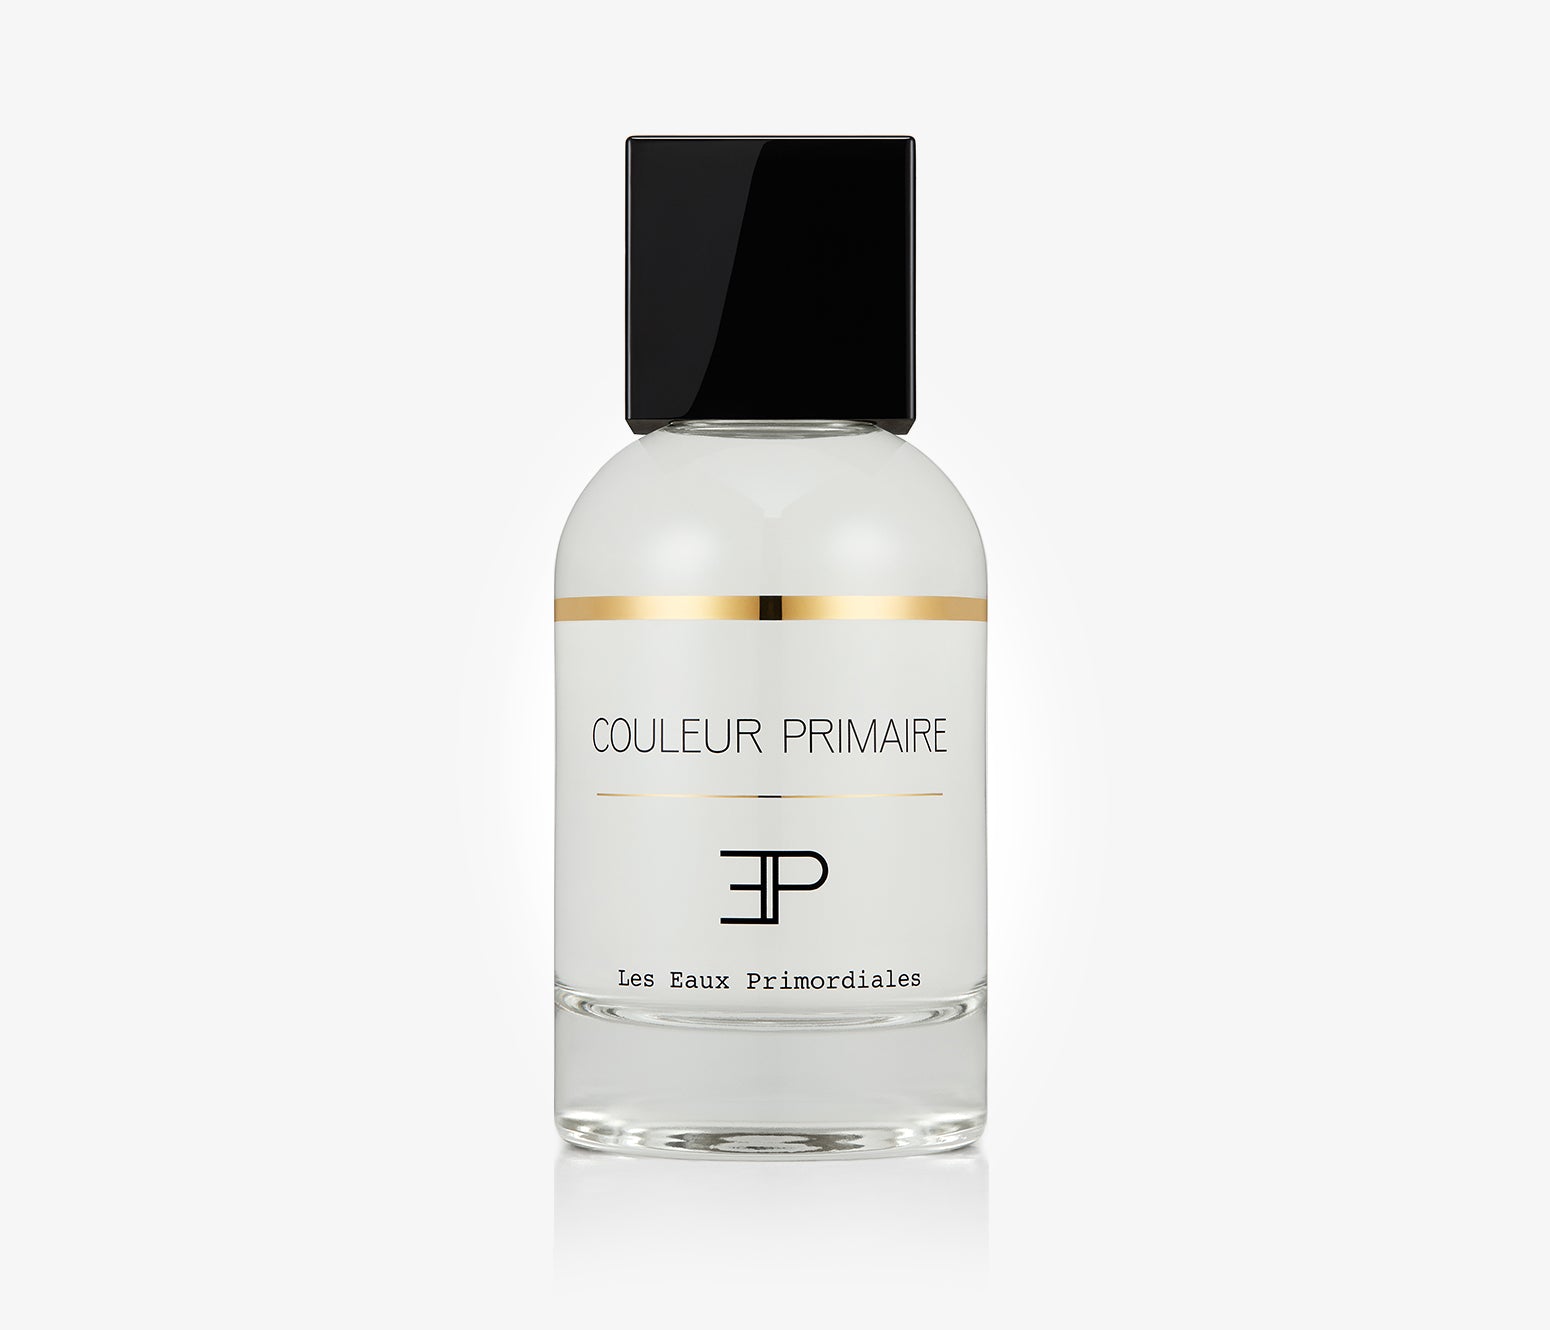 Les Eaux Primordiales - Couleur Primaire - 100ml - FYX6612 - Product Image - Fragrance - Les Senteurs